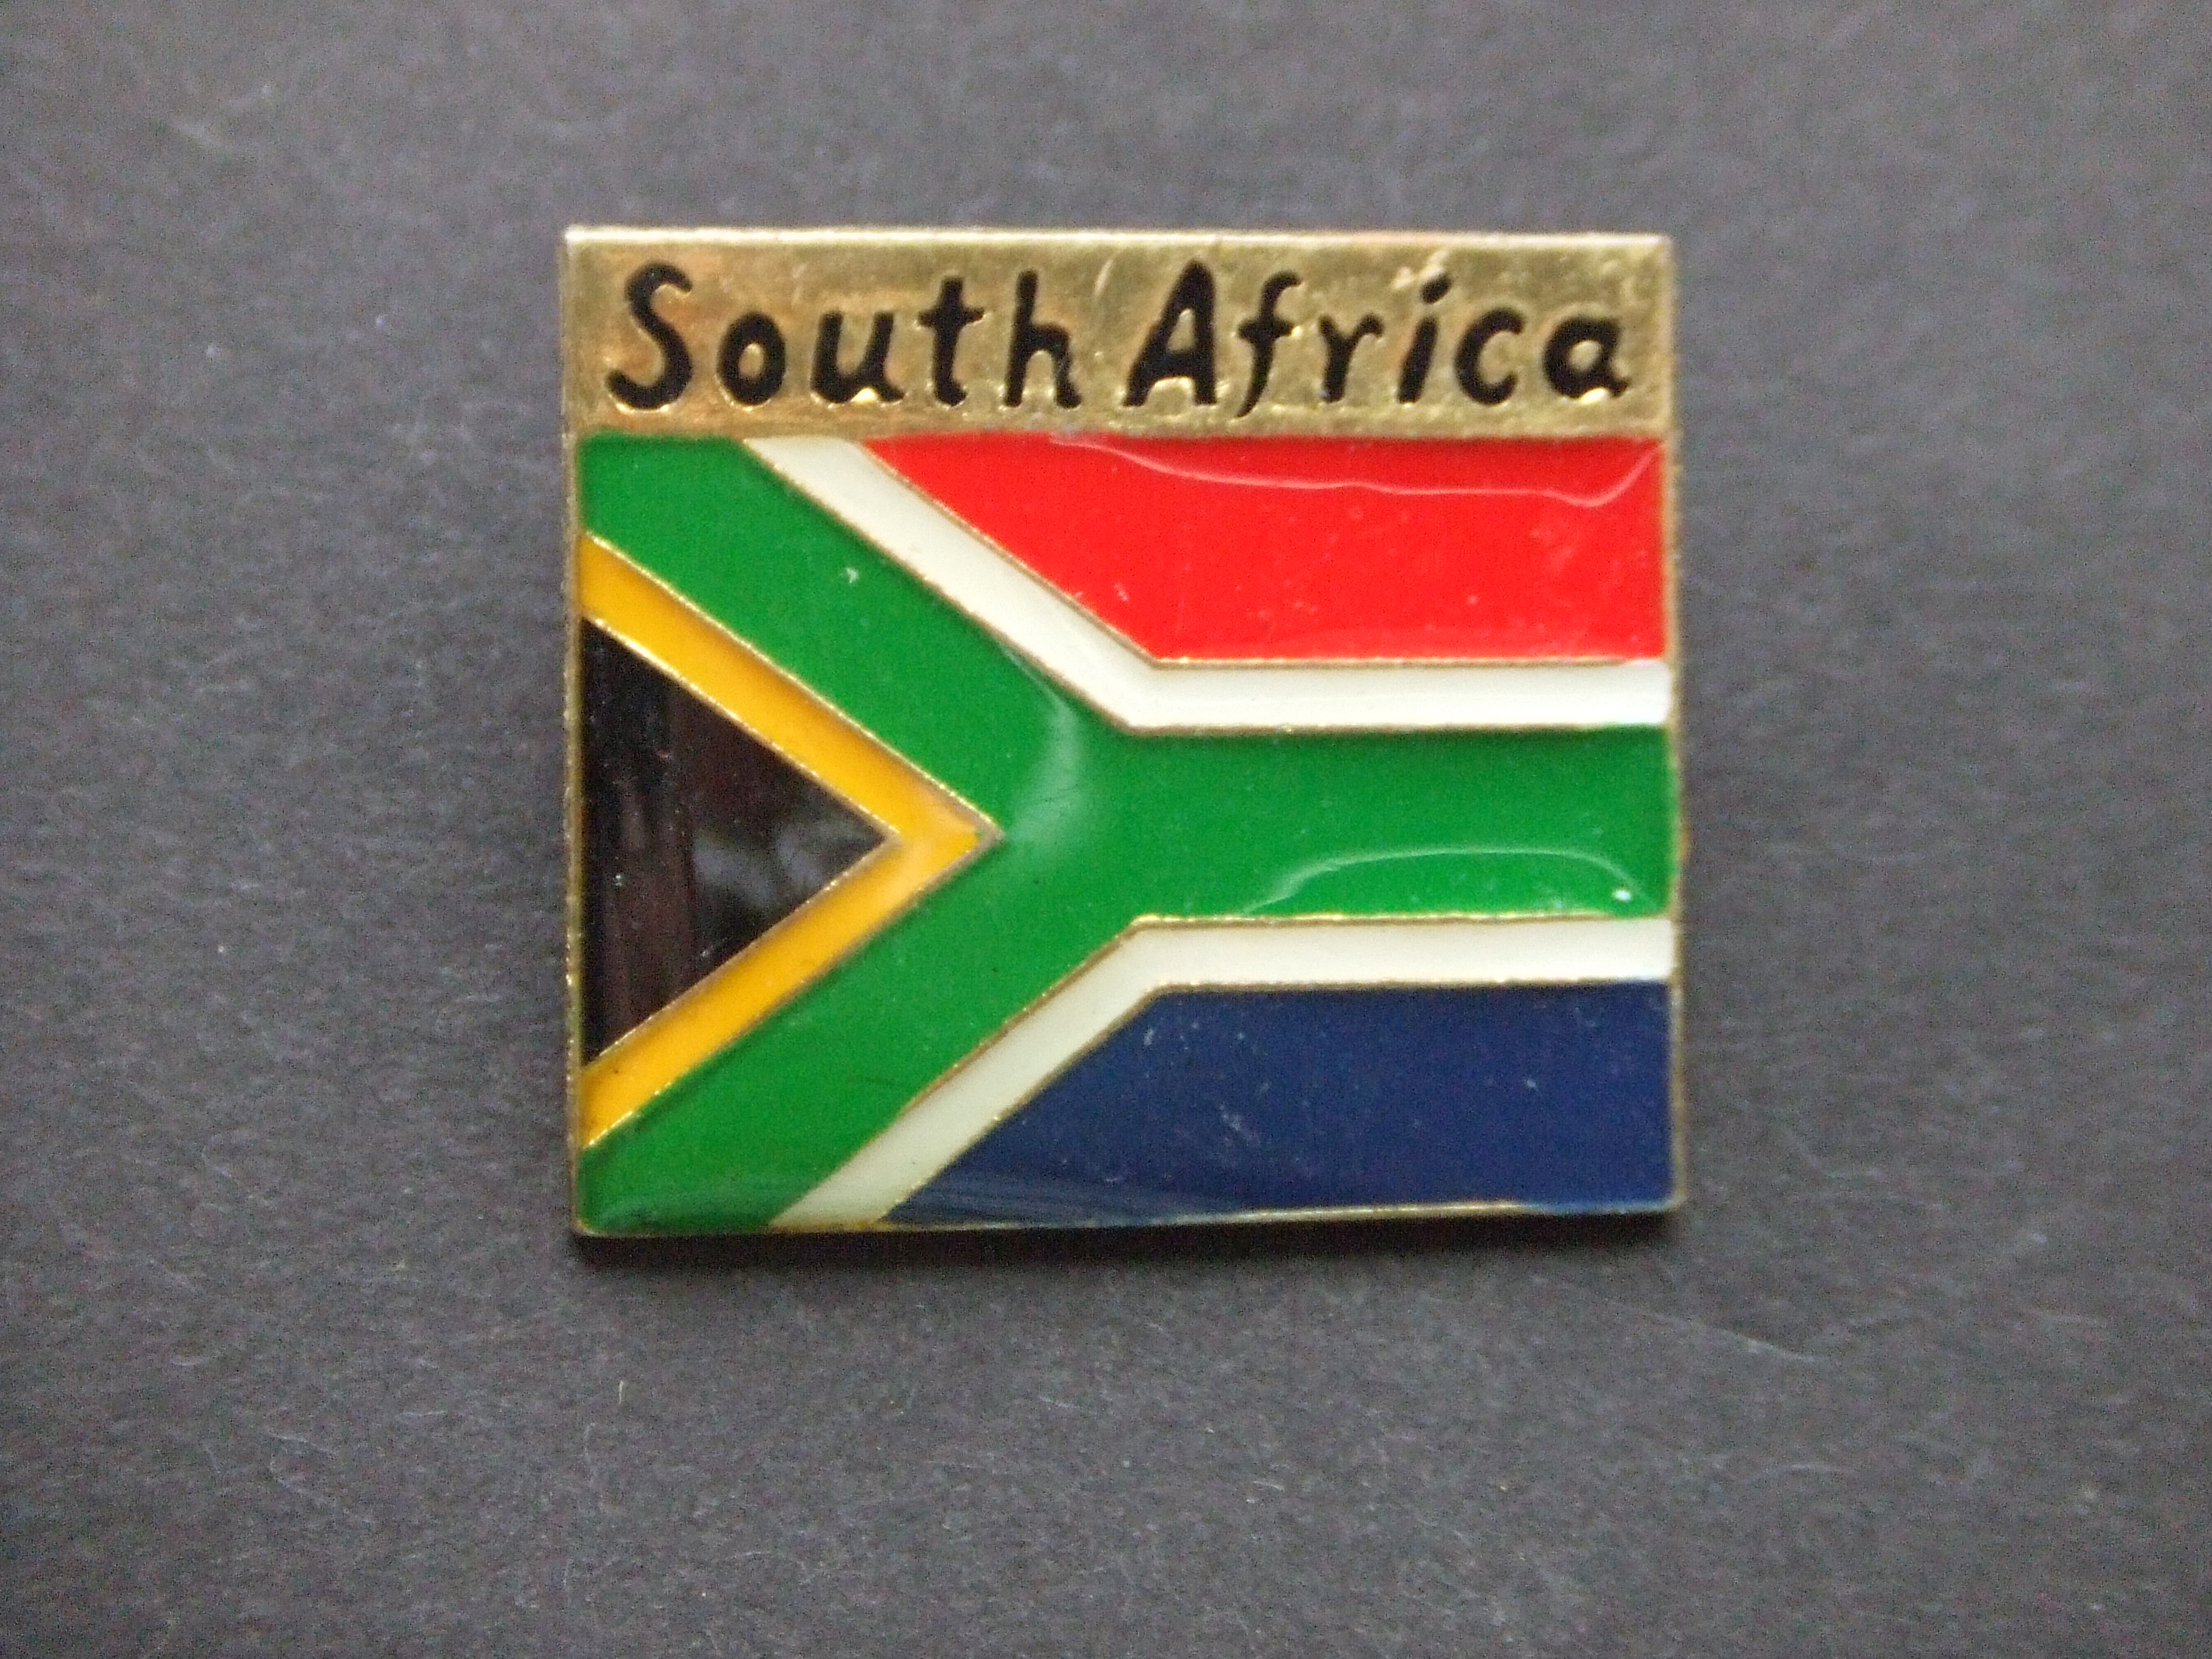 Bowlingbond Zuid afrika vlag